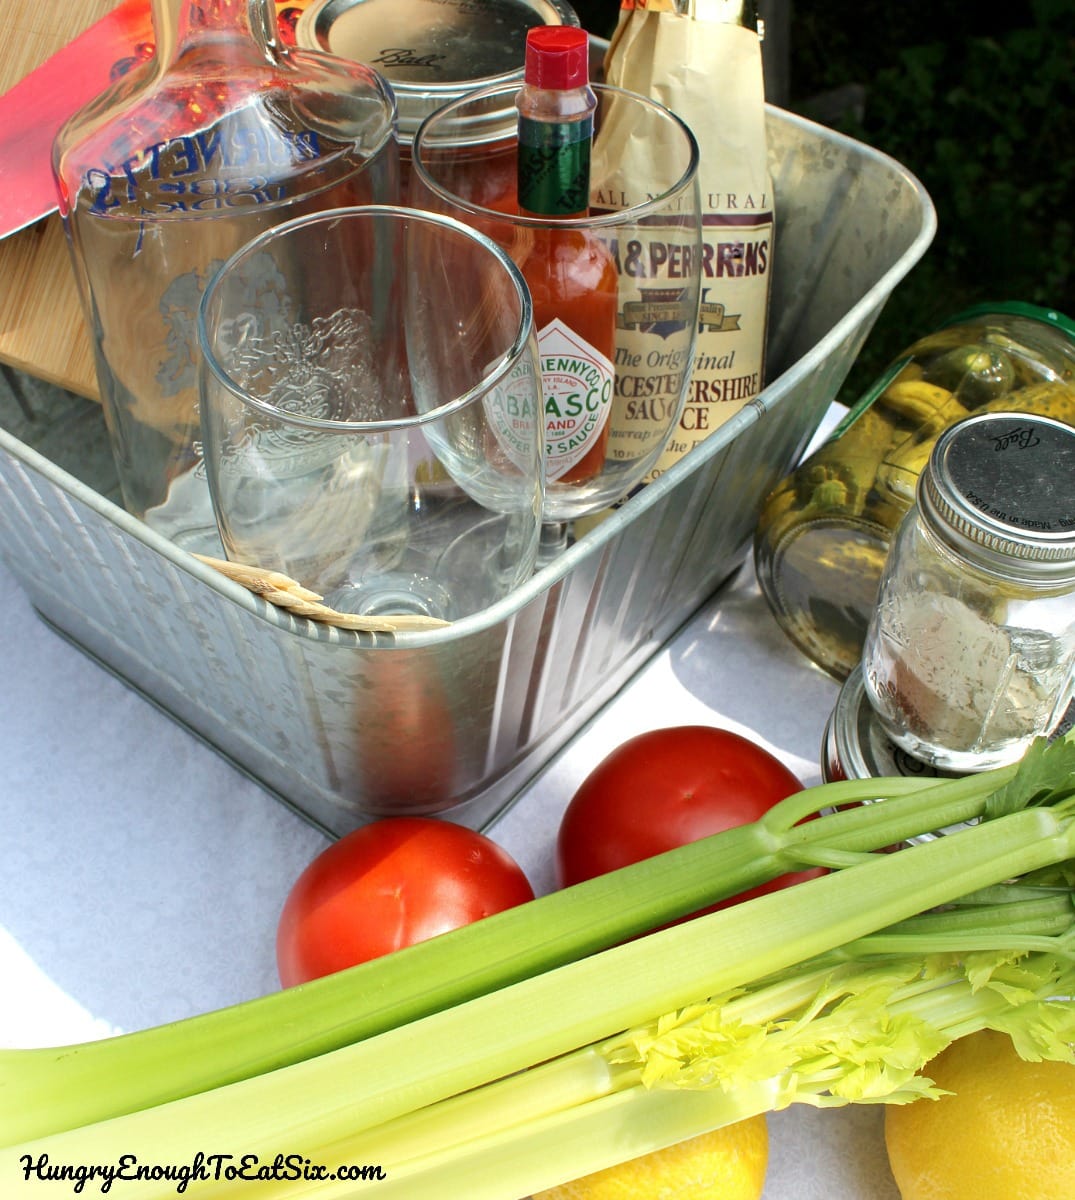 Celery, tomatoes, glasses, and seasonings